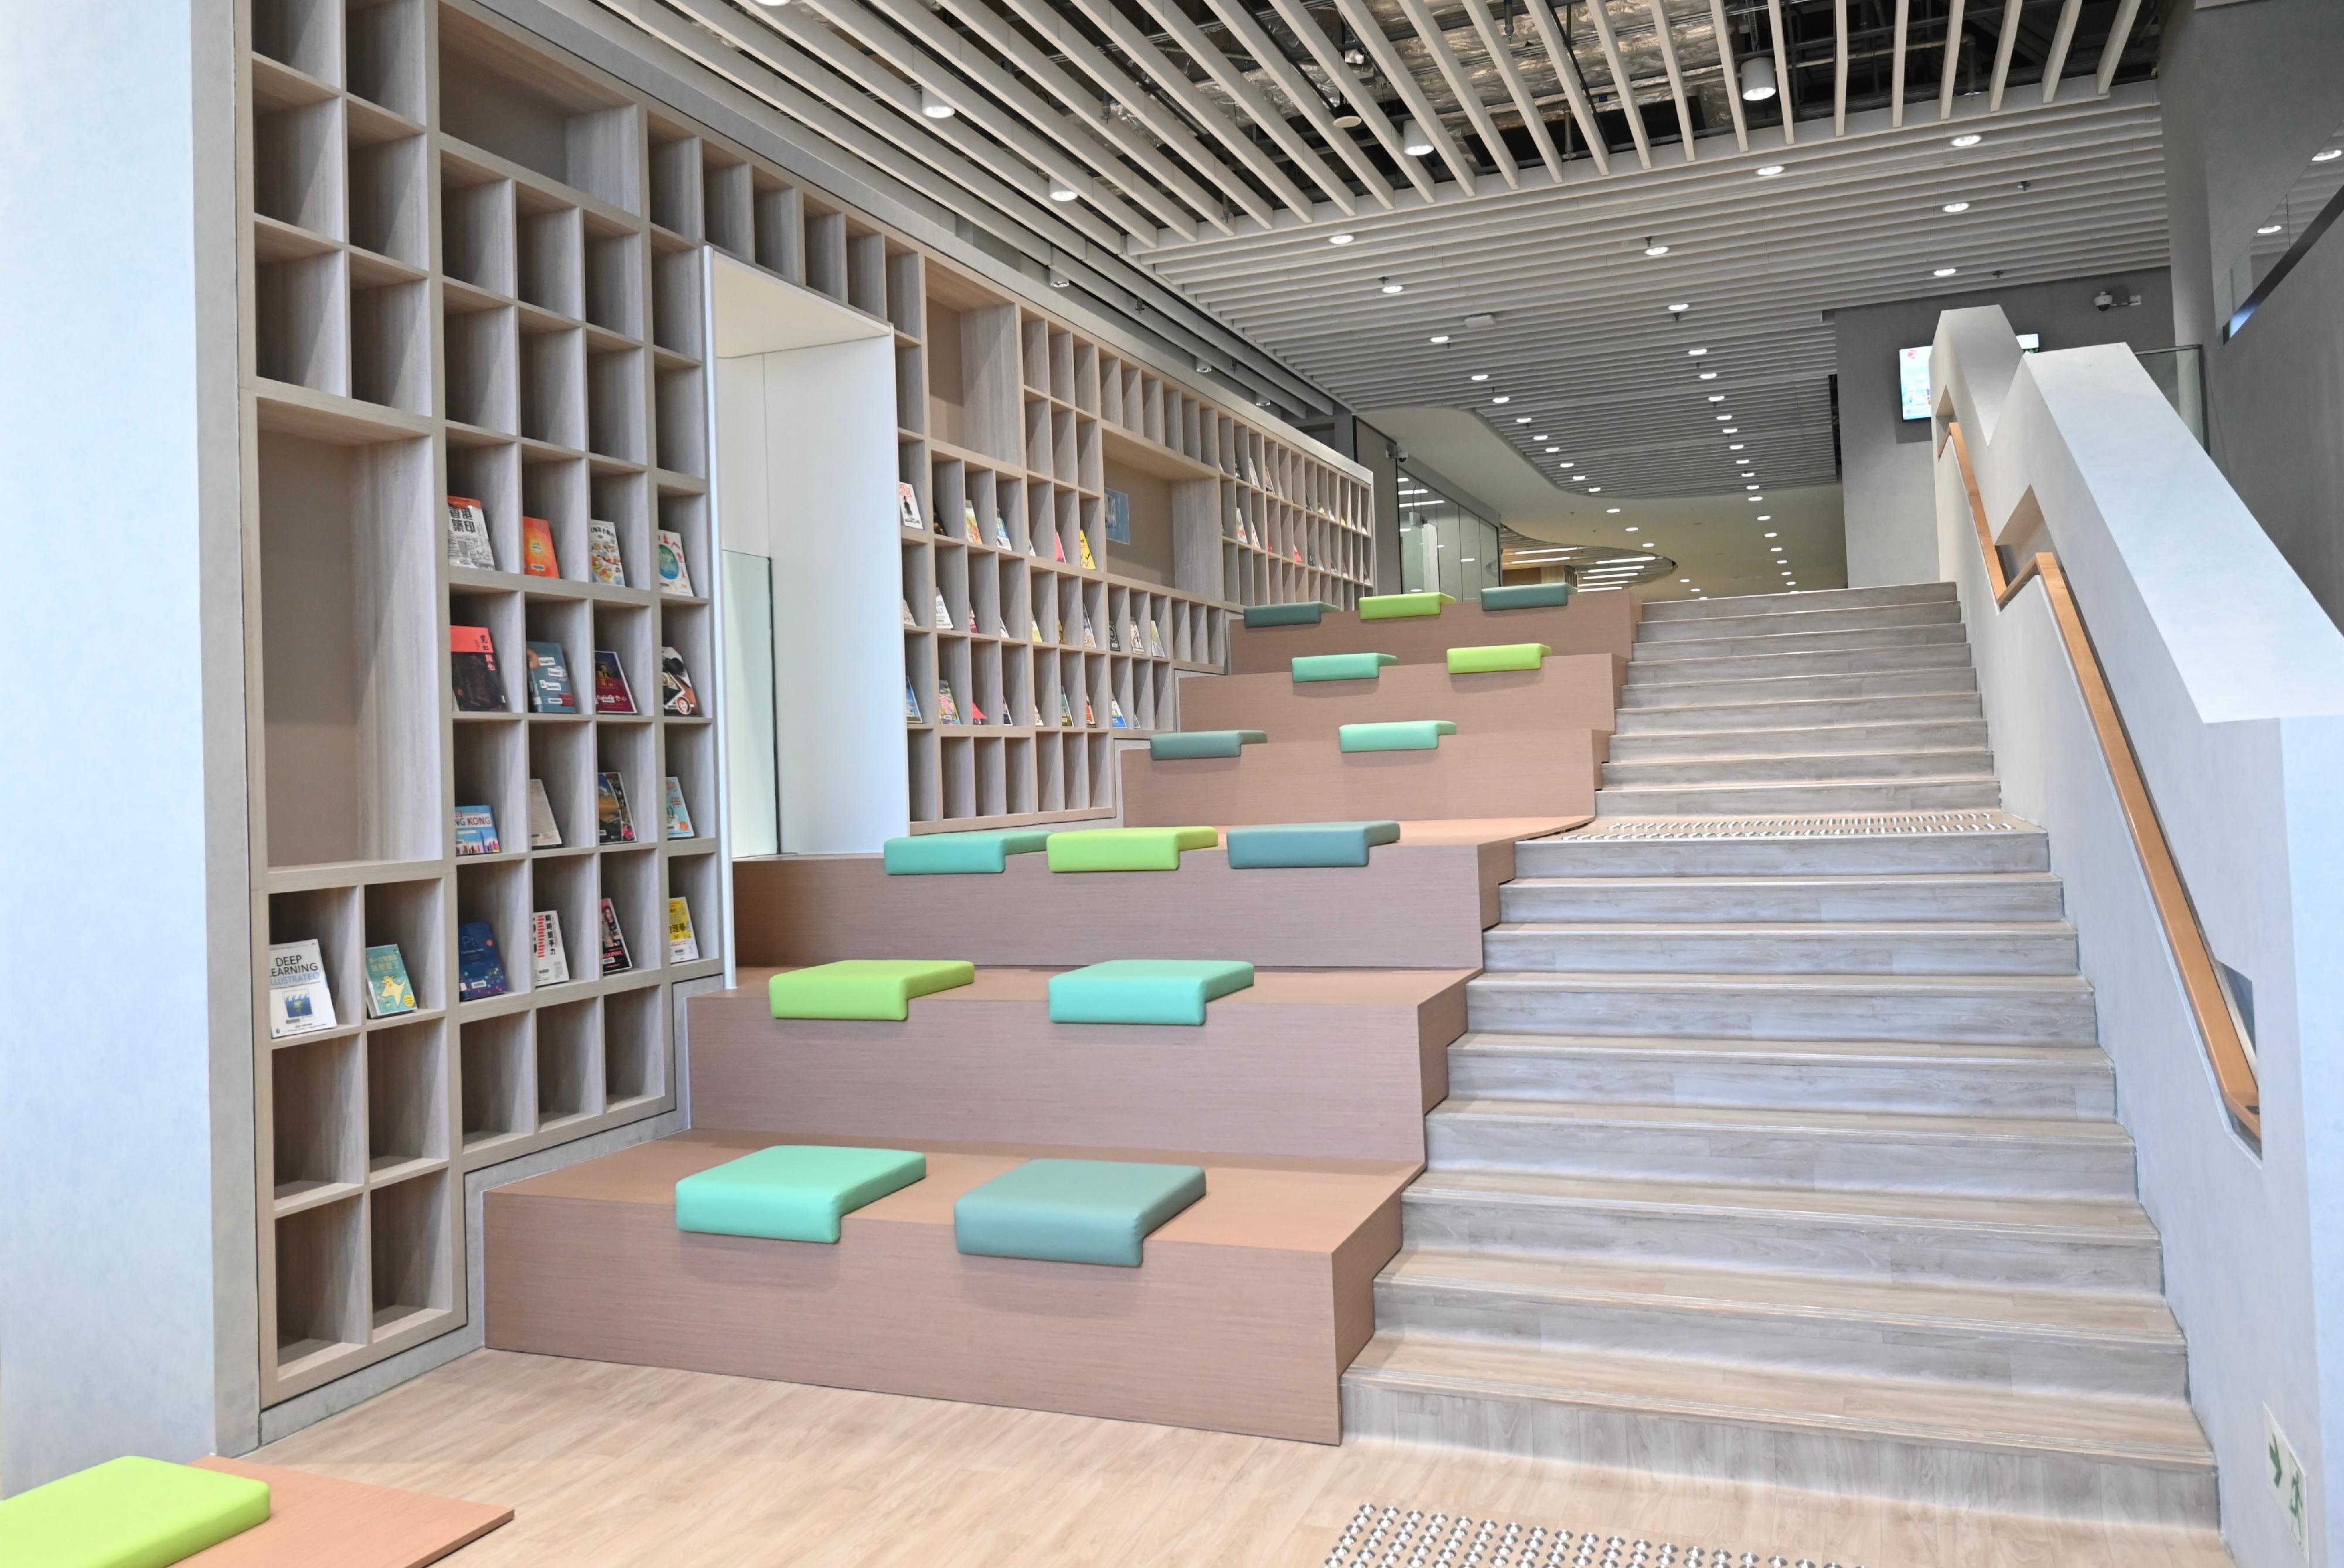 深水埗公共圖書館將於三月三十日（星期四）起全面投入服務，為區內居民提供全面和多元化的圖書館服務，讓市民可以在寧靜和舒適的環境享受閱讀樂趣。